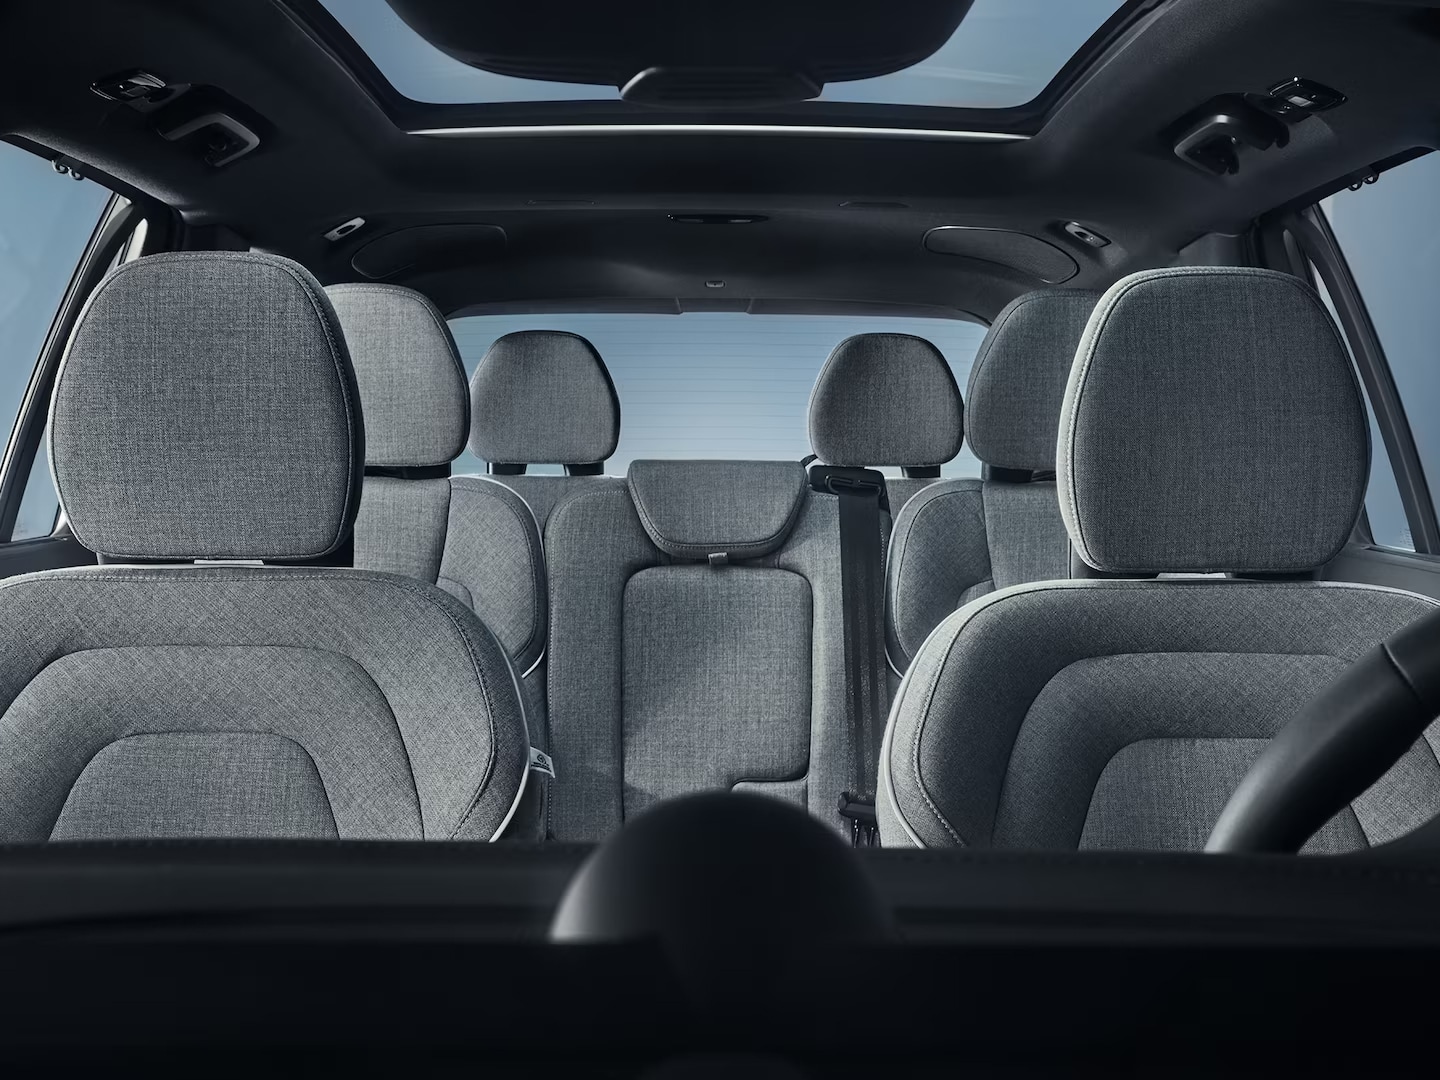 Vista grandangolare di sette sedili con rivestimento in lana nell'abitacolo della Volvo XC90 plug-in hybrid.